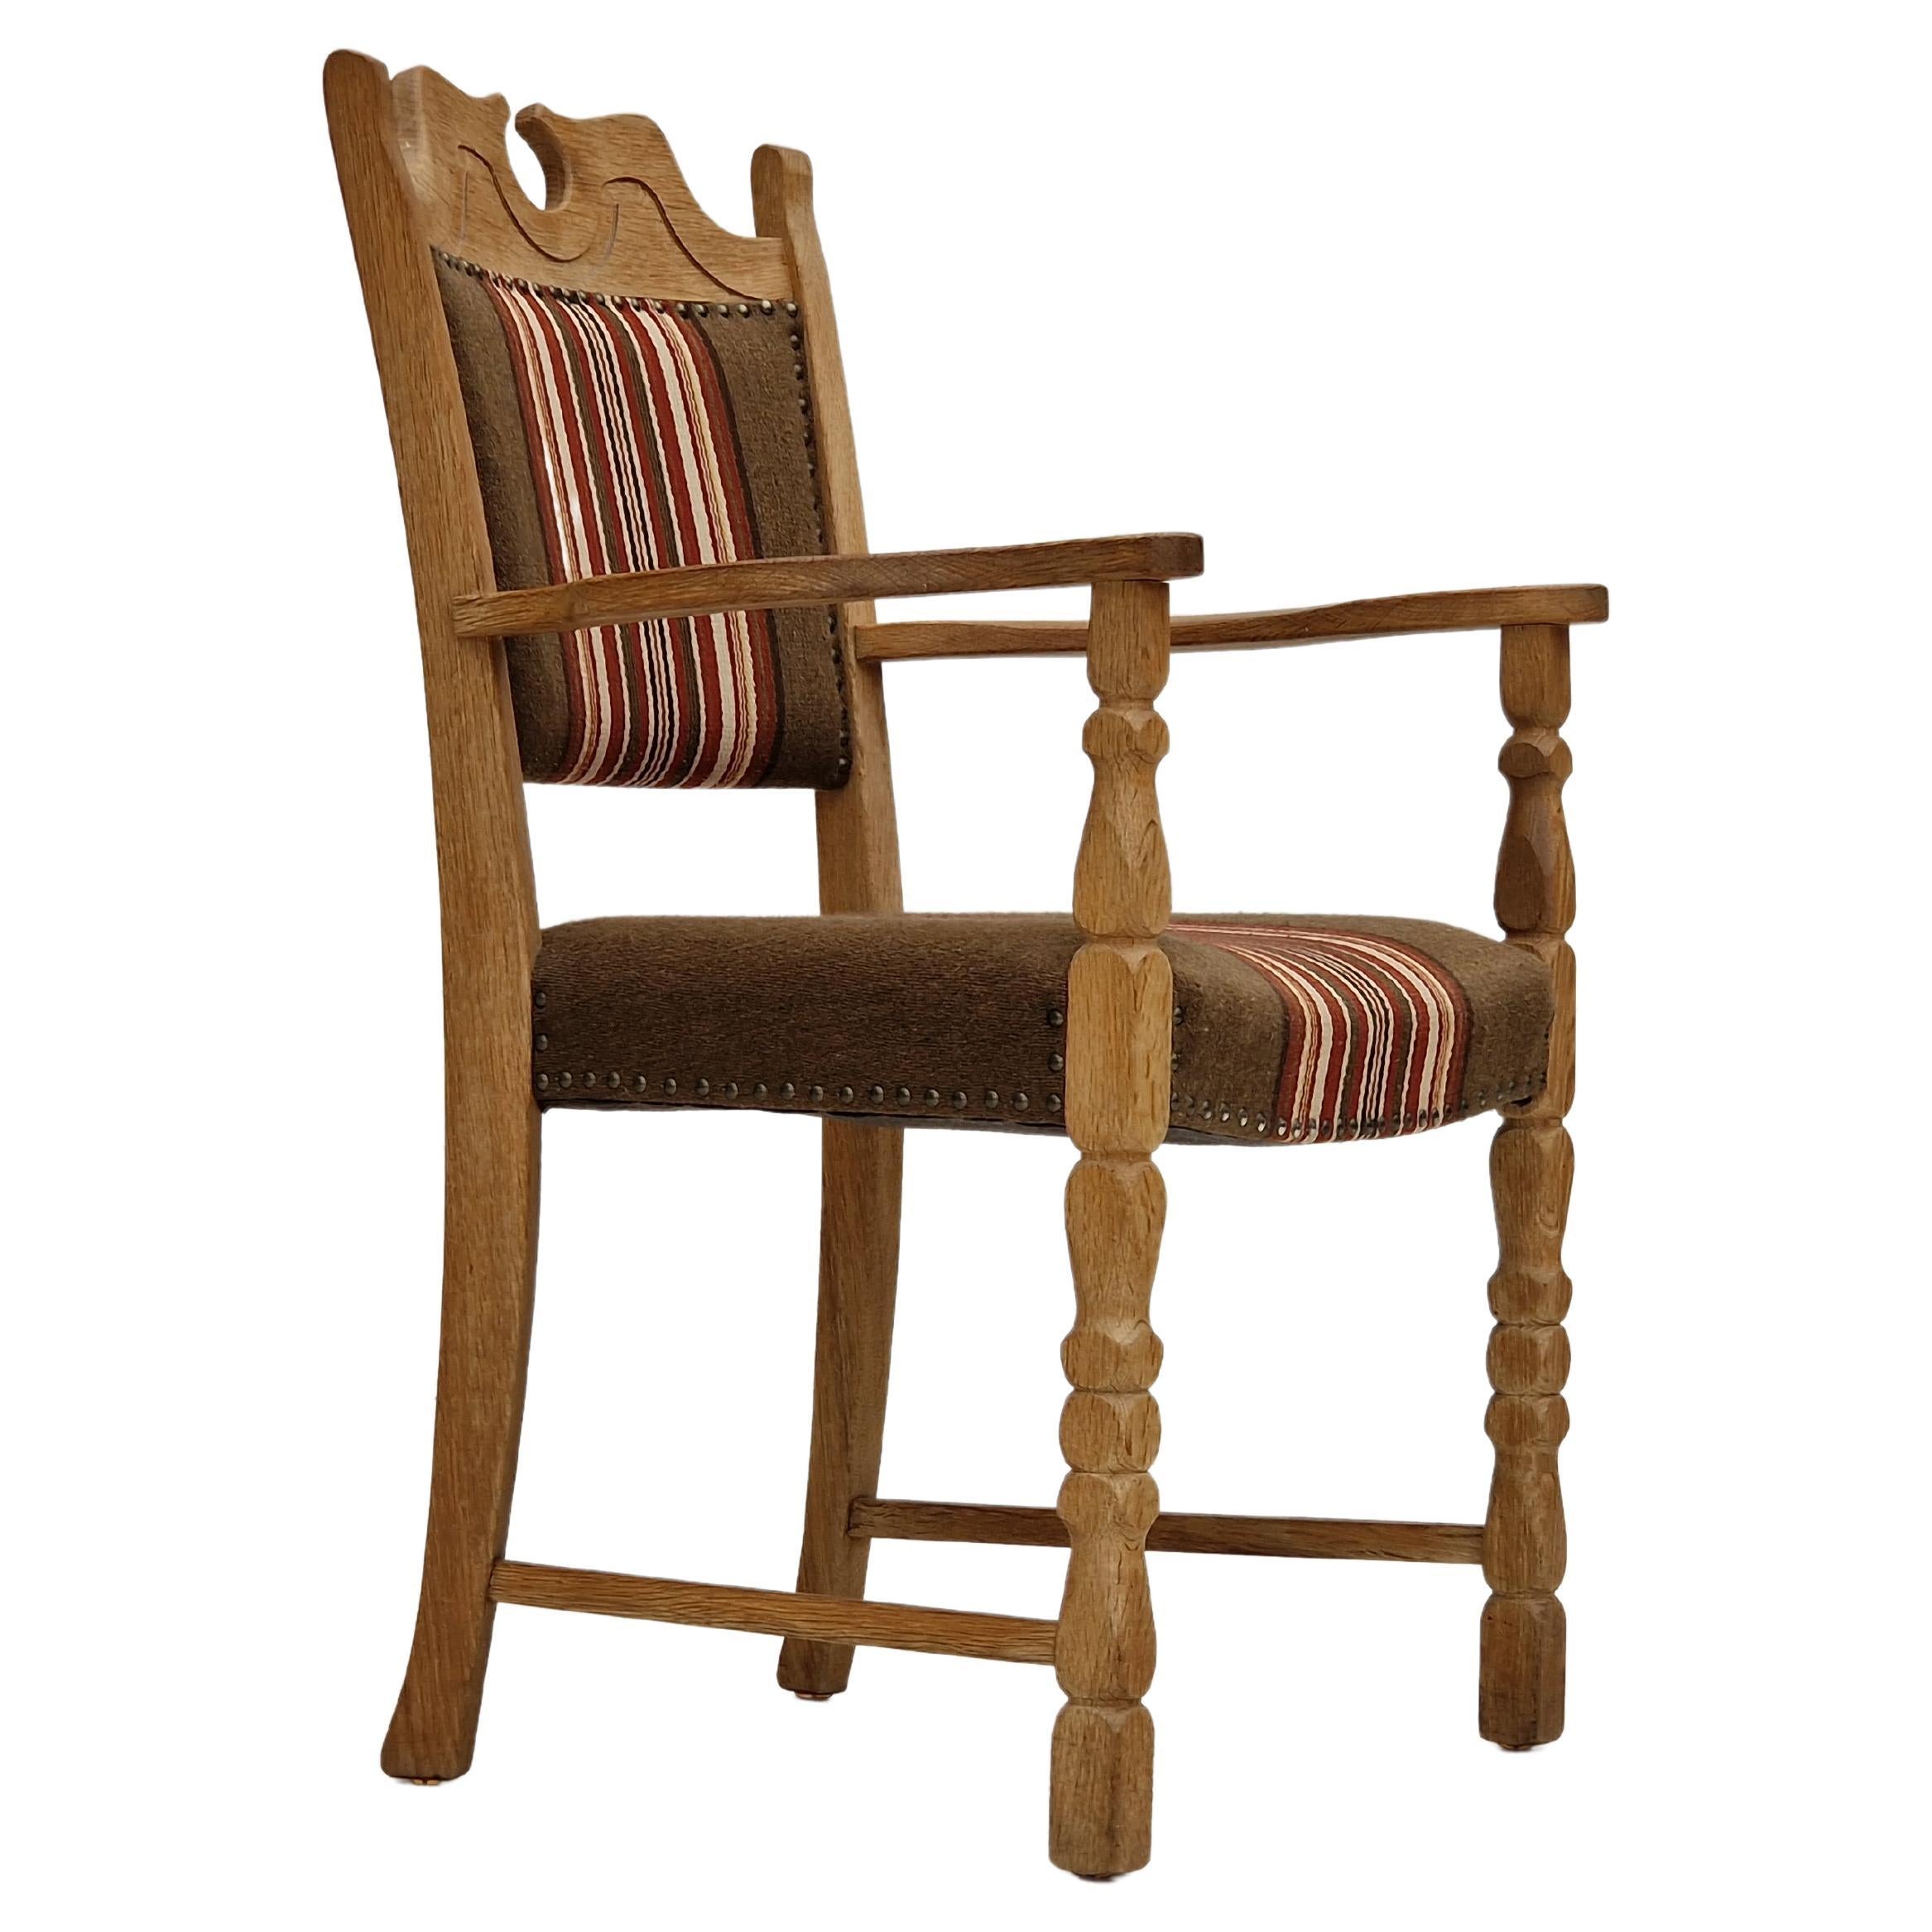 1960s, Danish design, fauteuil, bois de chêne, meubles en laine.